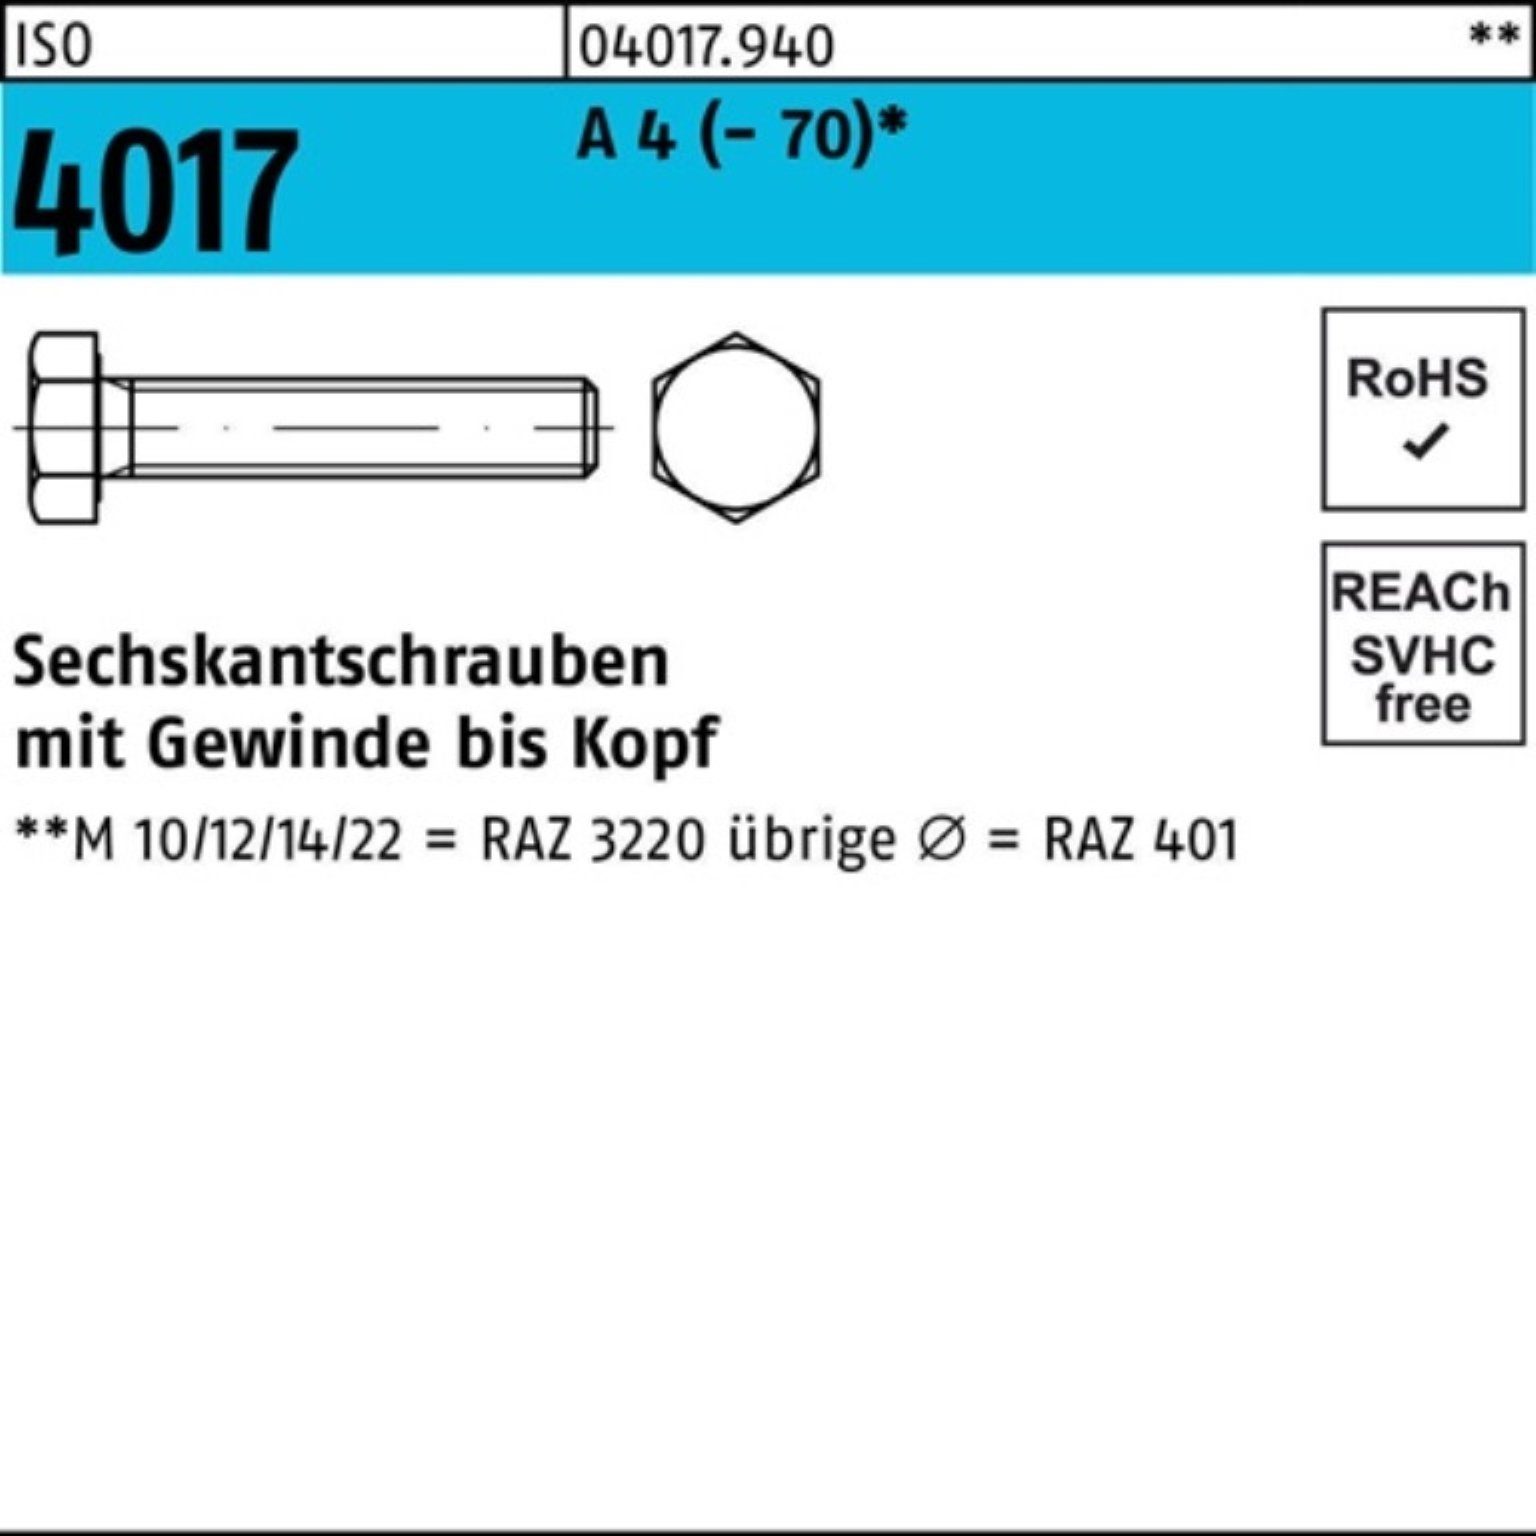 Bufab Sechskantschraube (70) 100 50 Stück Sechskantschraube Pack VG 4 A 100er M10x 4017 ISO